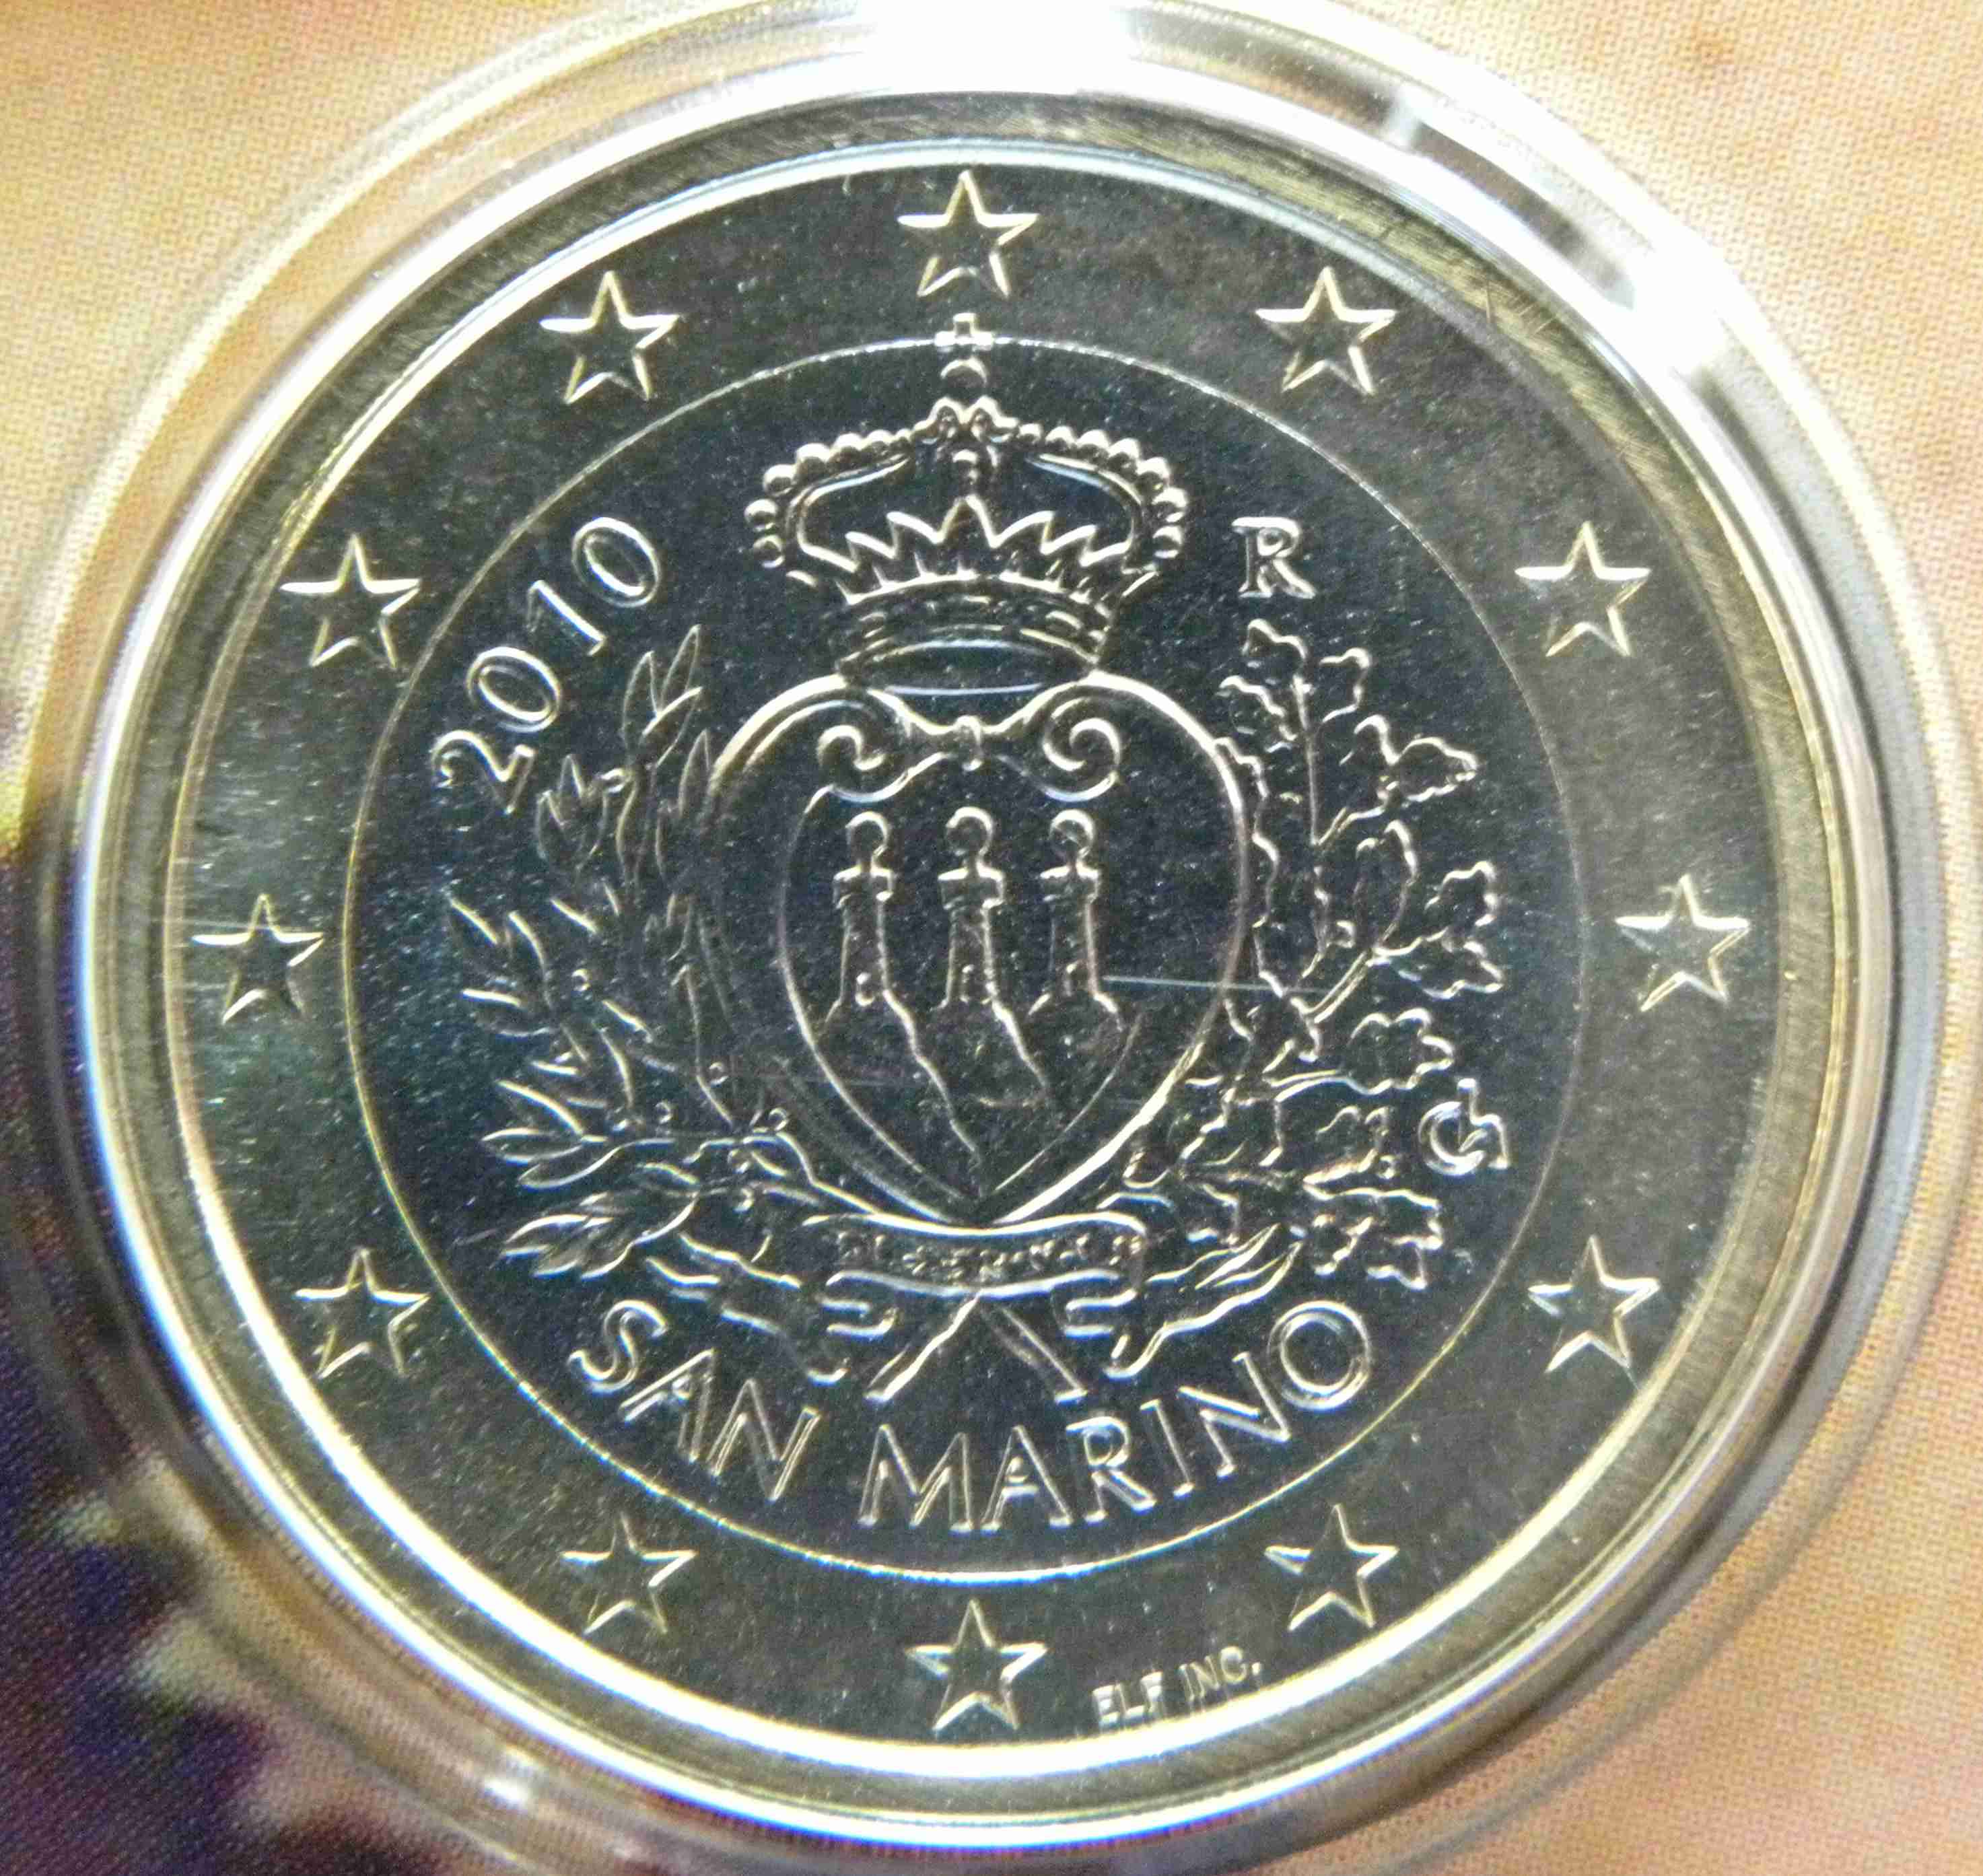 San Marino 1 Euro Münze 2010 - euro-muenzen.tv - Der Online Euromünzen